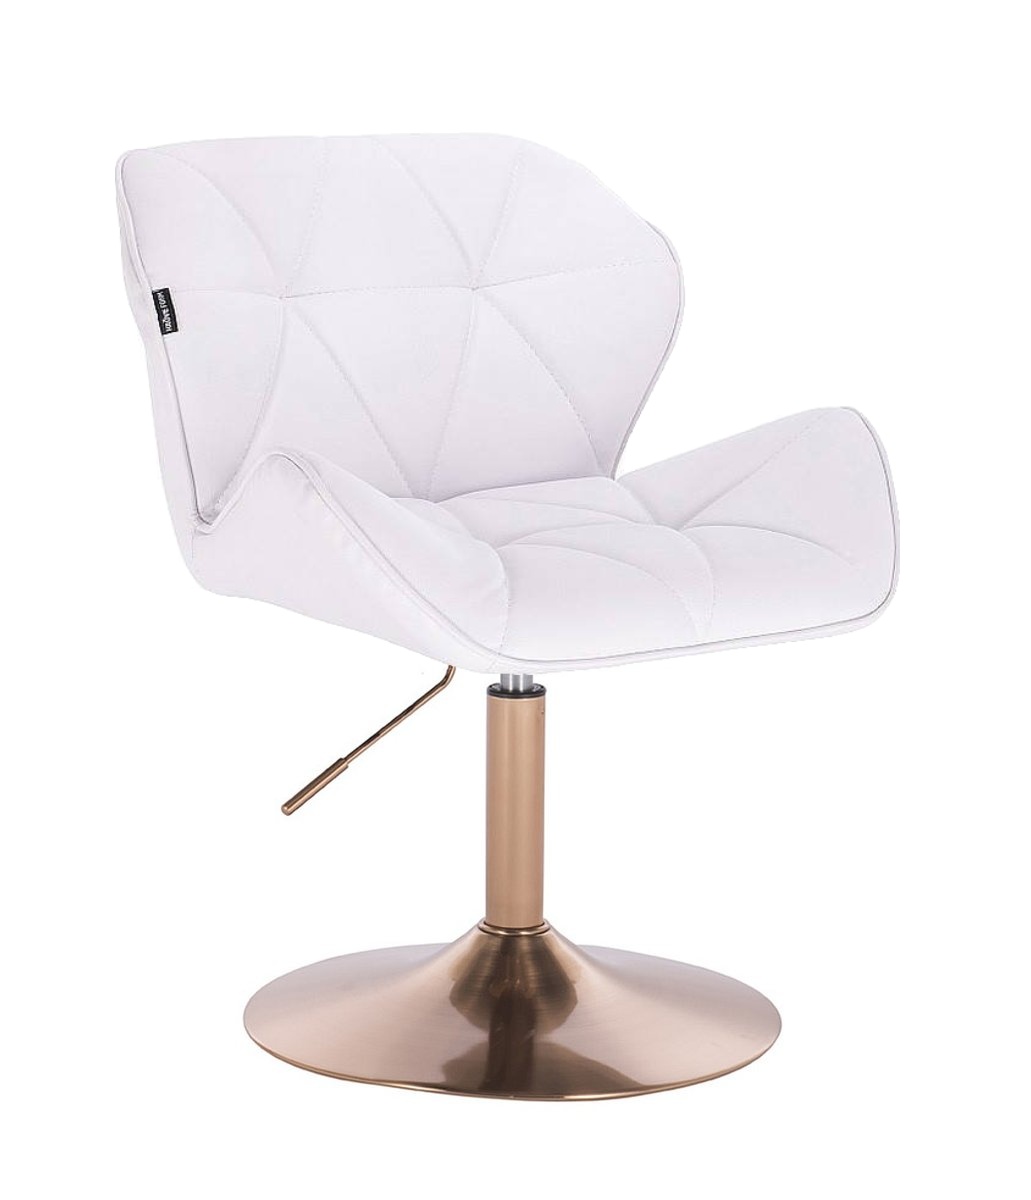 Kosmetická židle MILANO zlaté kulaté podstavě - bílá